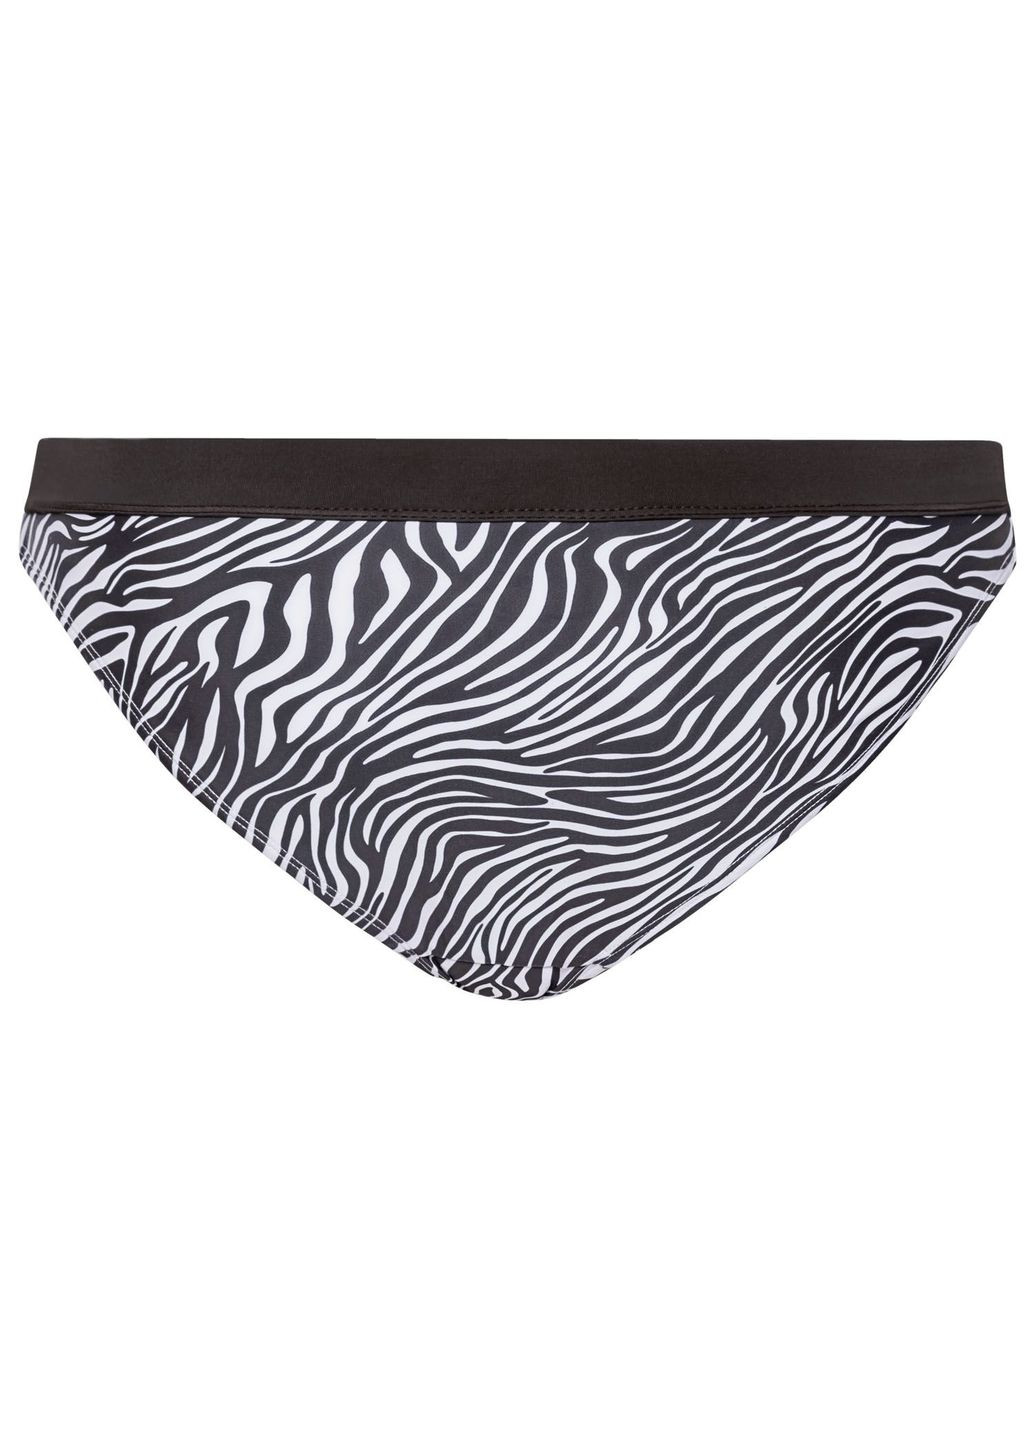 Черно-белый купальник раздельный на подкладке с принтом для женщины creora® 348125-1 черный, белый бикини Esmara